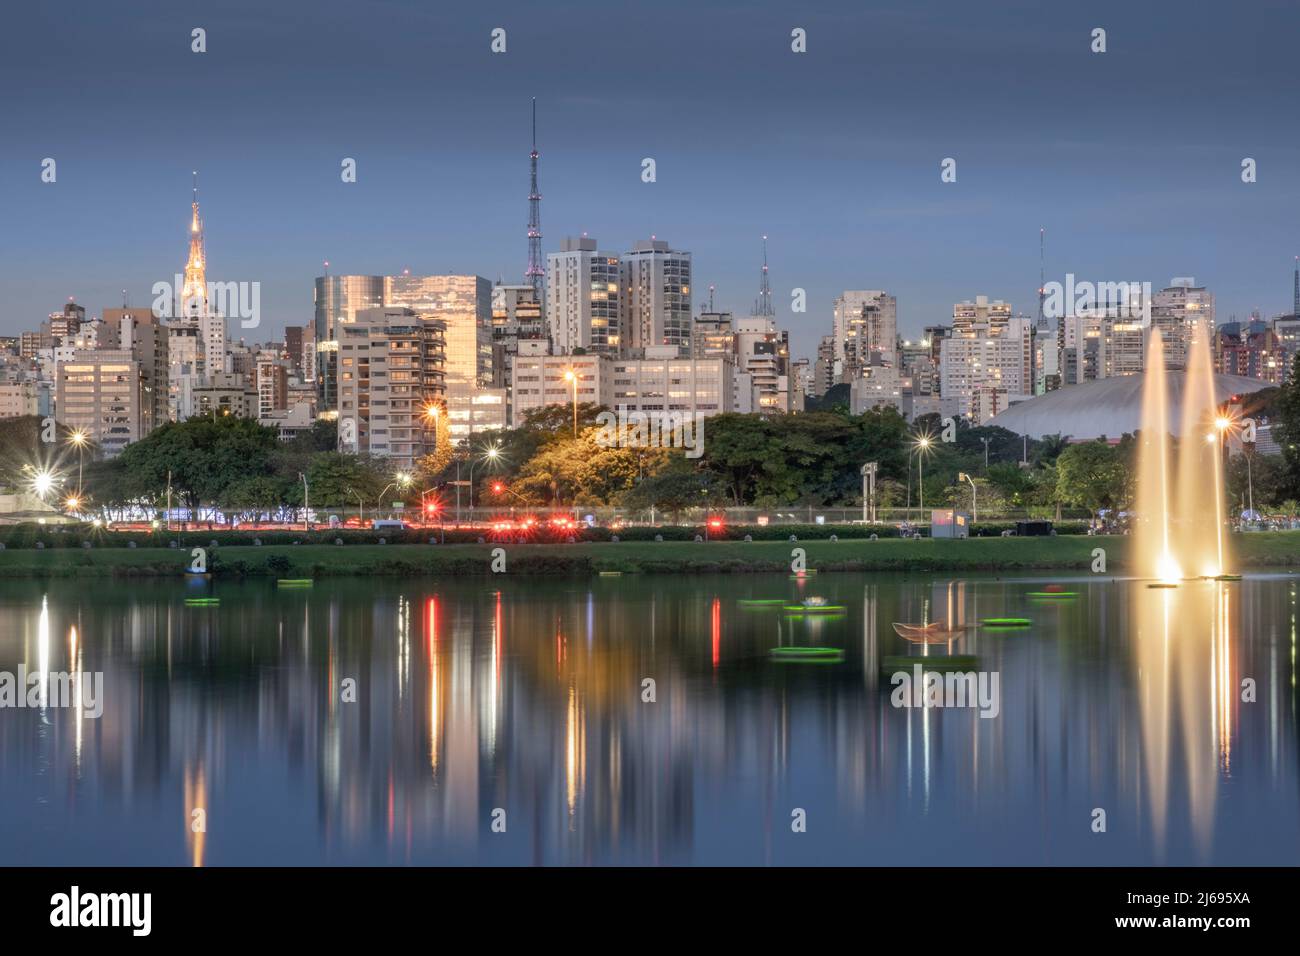 L'horizon urbain du centre-ville se reflète dans le lac Lago das Garcas au crépuscule, parc Ibirapuera, Sao Paulo, Brésil Banque D'Images